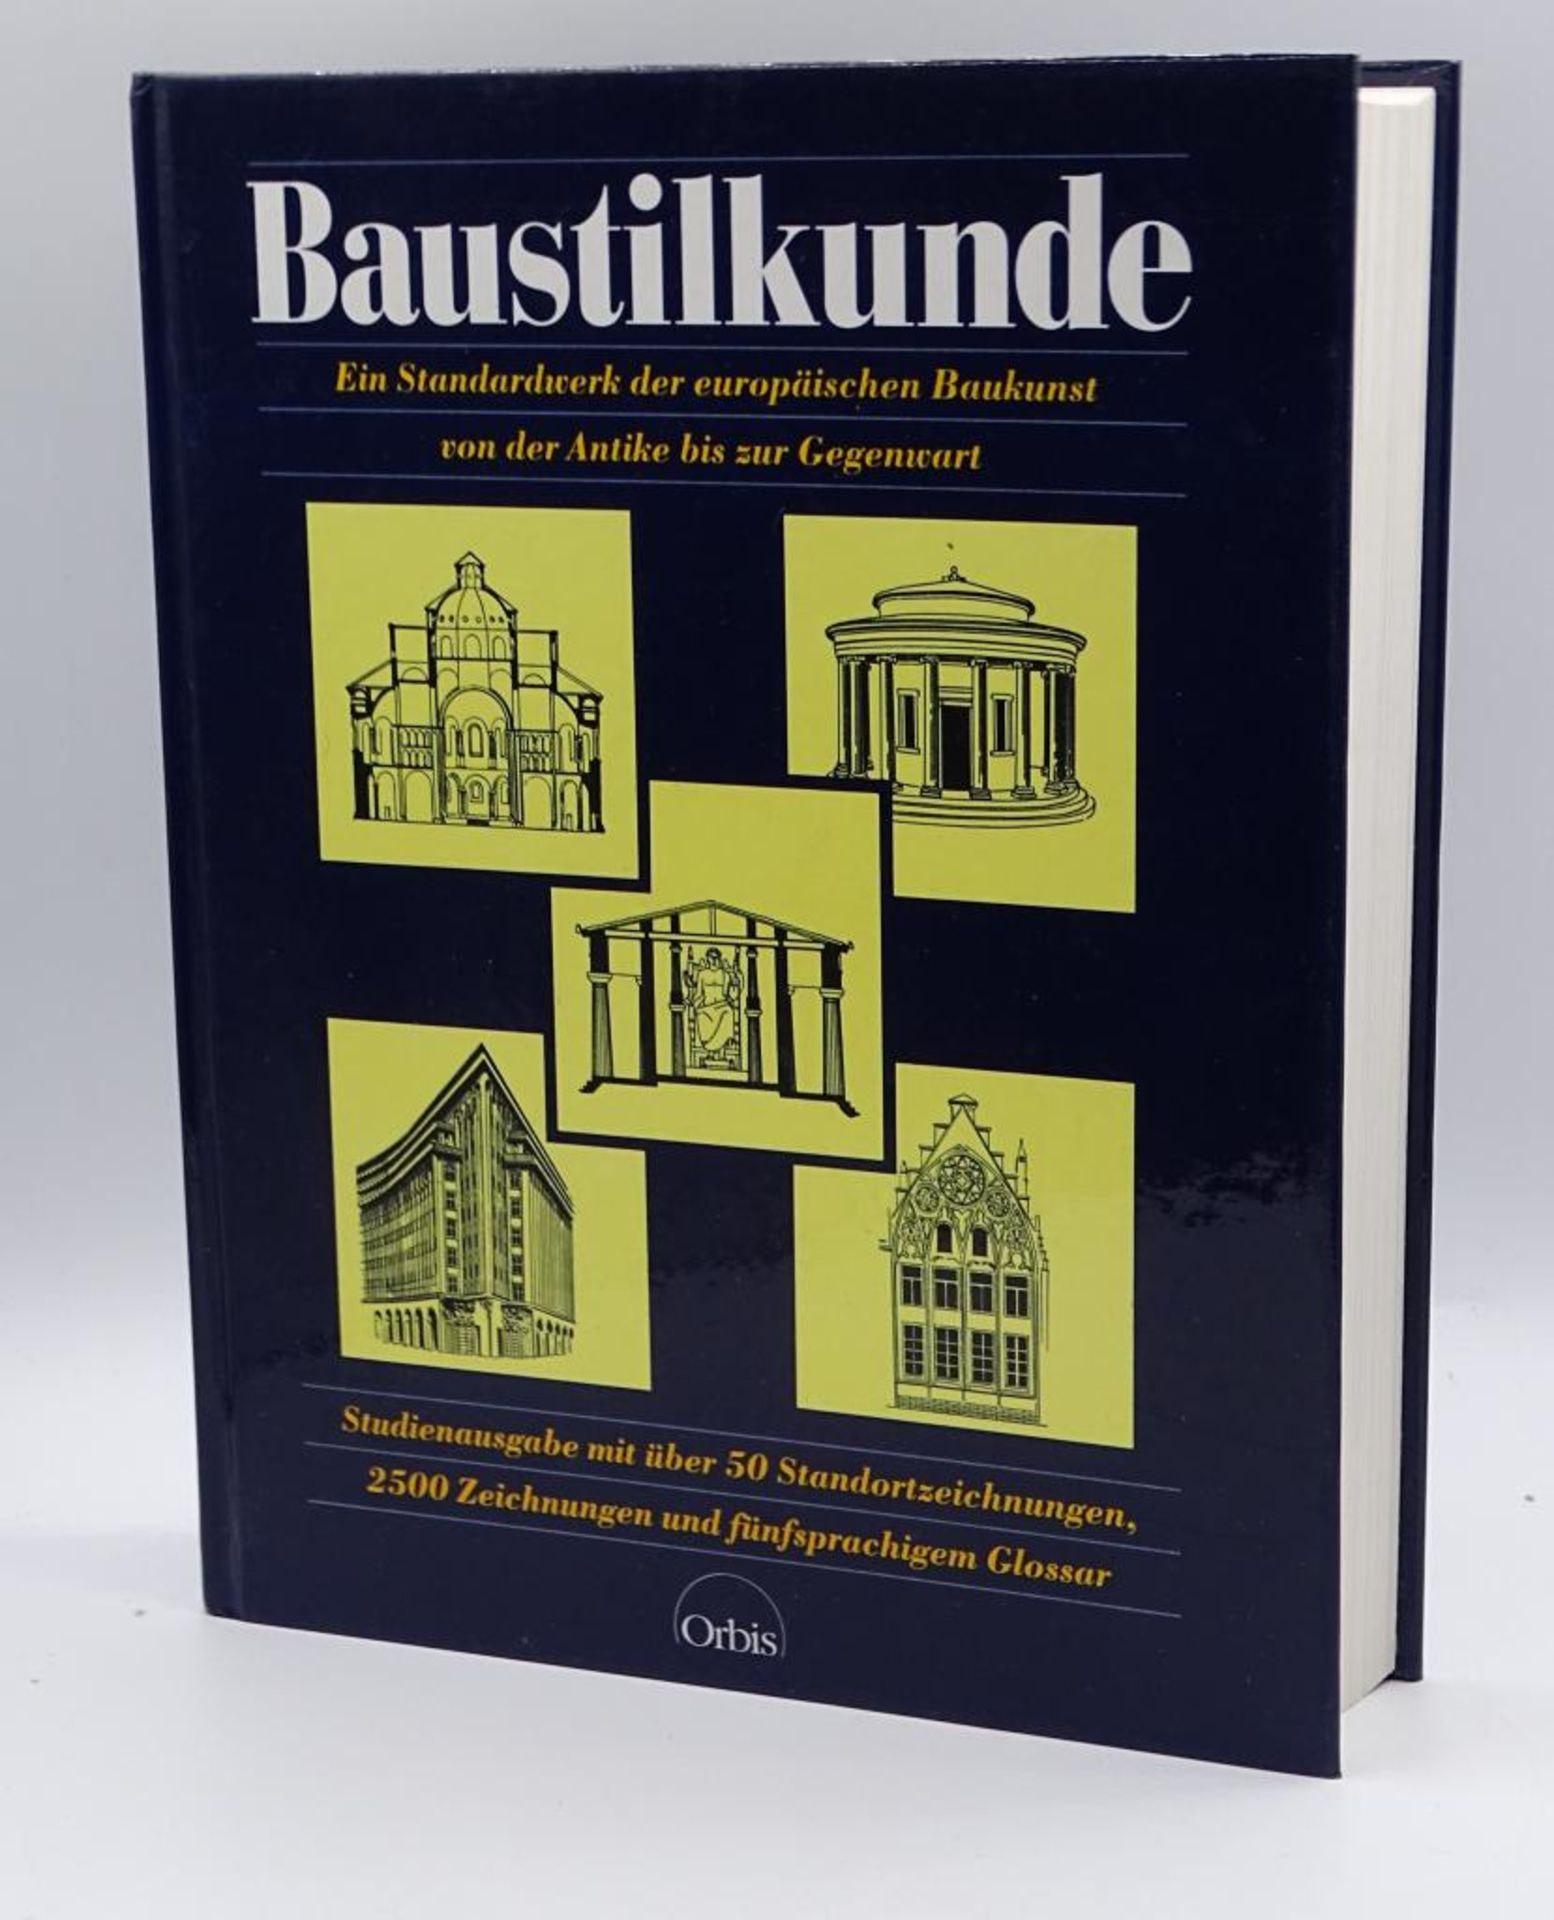 "Baustilkunde",Ein Standardwerk der europäischen Baukunst von der Antike bis zur Gegenwart", 2500